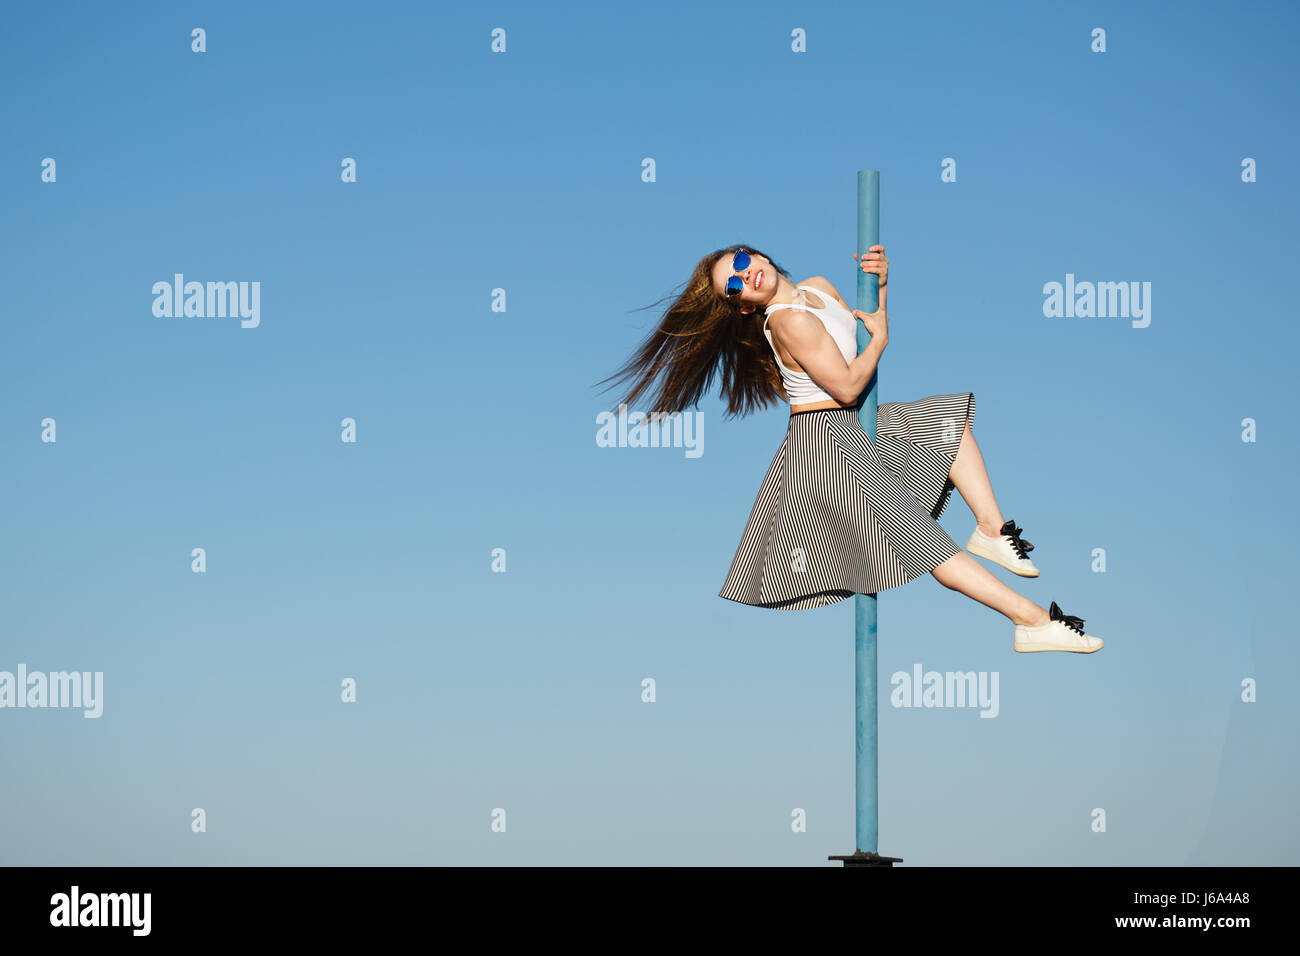 Junge attraktive Mädchen Hipster tanzen auf der Pole. Sie ist in einem Oberteil, Rock und Sonnenbrille bekleidet. Fliegende Haare. Das Konzept des Lebens in Bewegung. Stockfoto